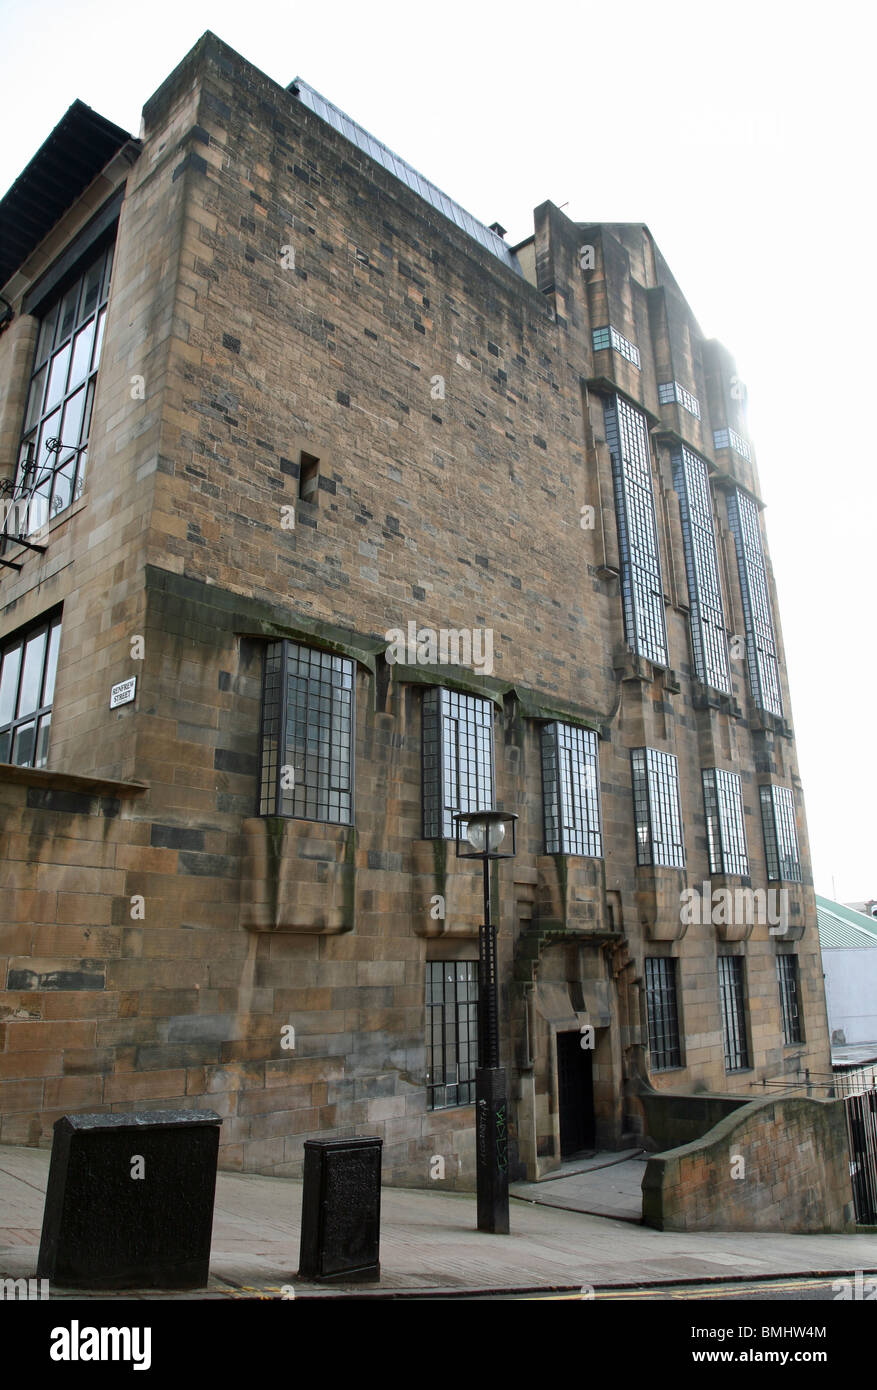 Foto genommen, bevor die Feuer des Charles Rennie Mackintosh Glasgow School of Art, Glasgow, Schottland, Großbritannien Stockfoto